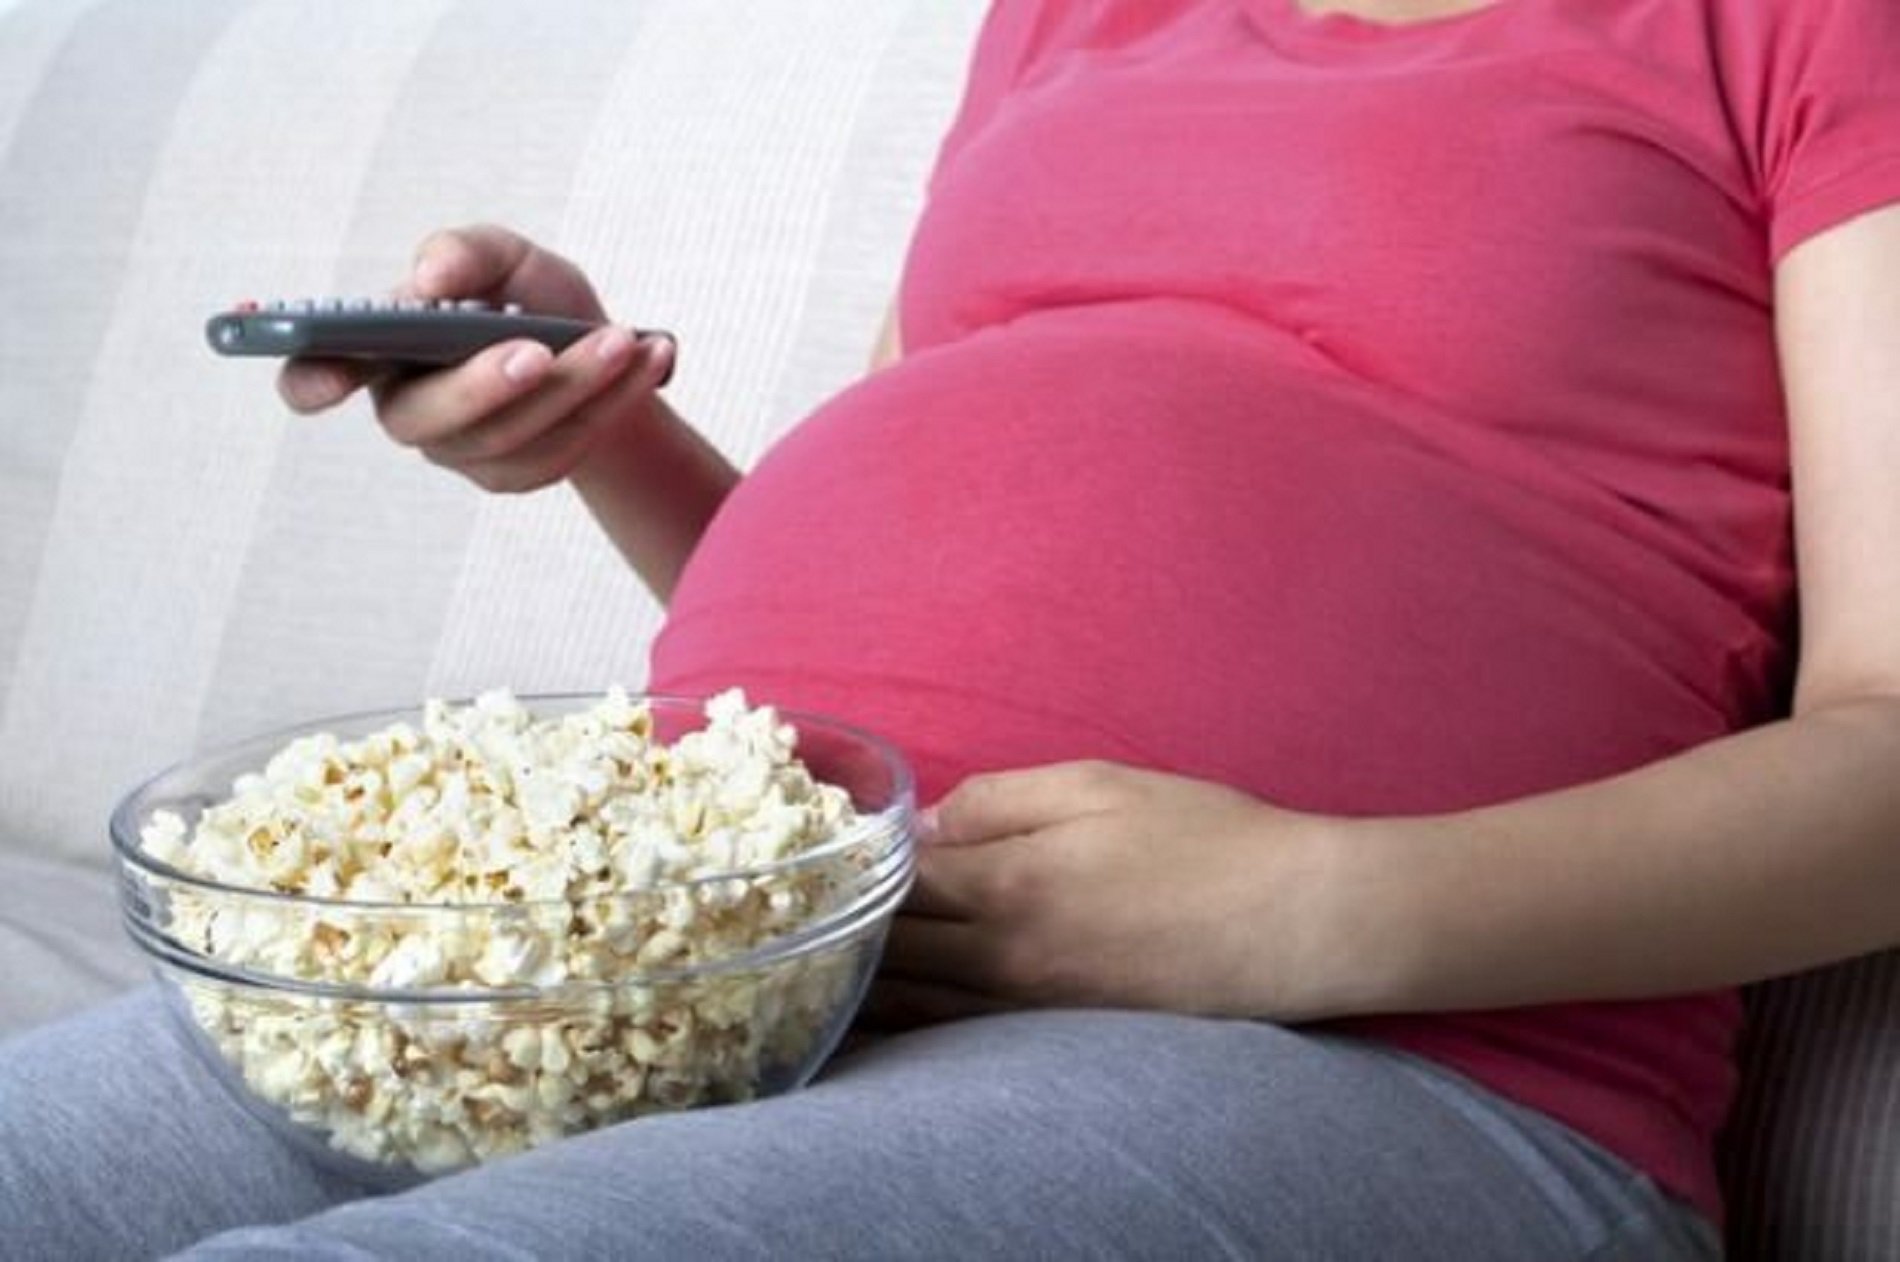 Comer alimentos ultraprocesados durante el embarazo afecta a las habilidades lingüísticas del niño